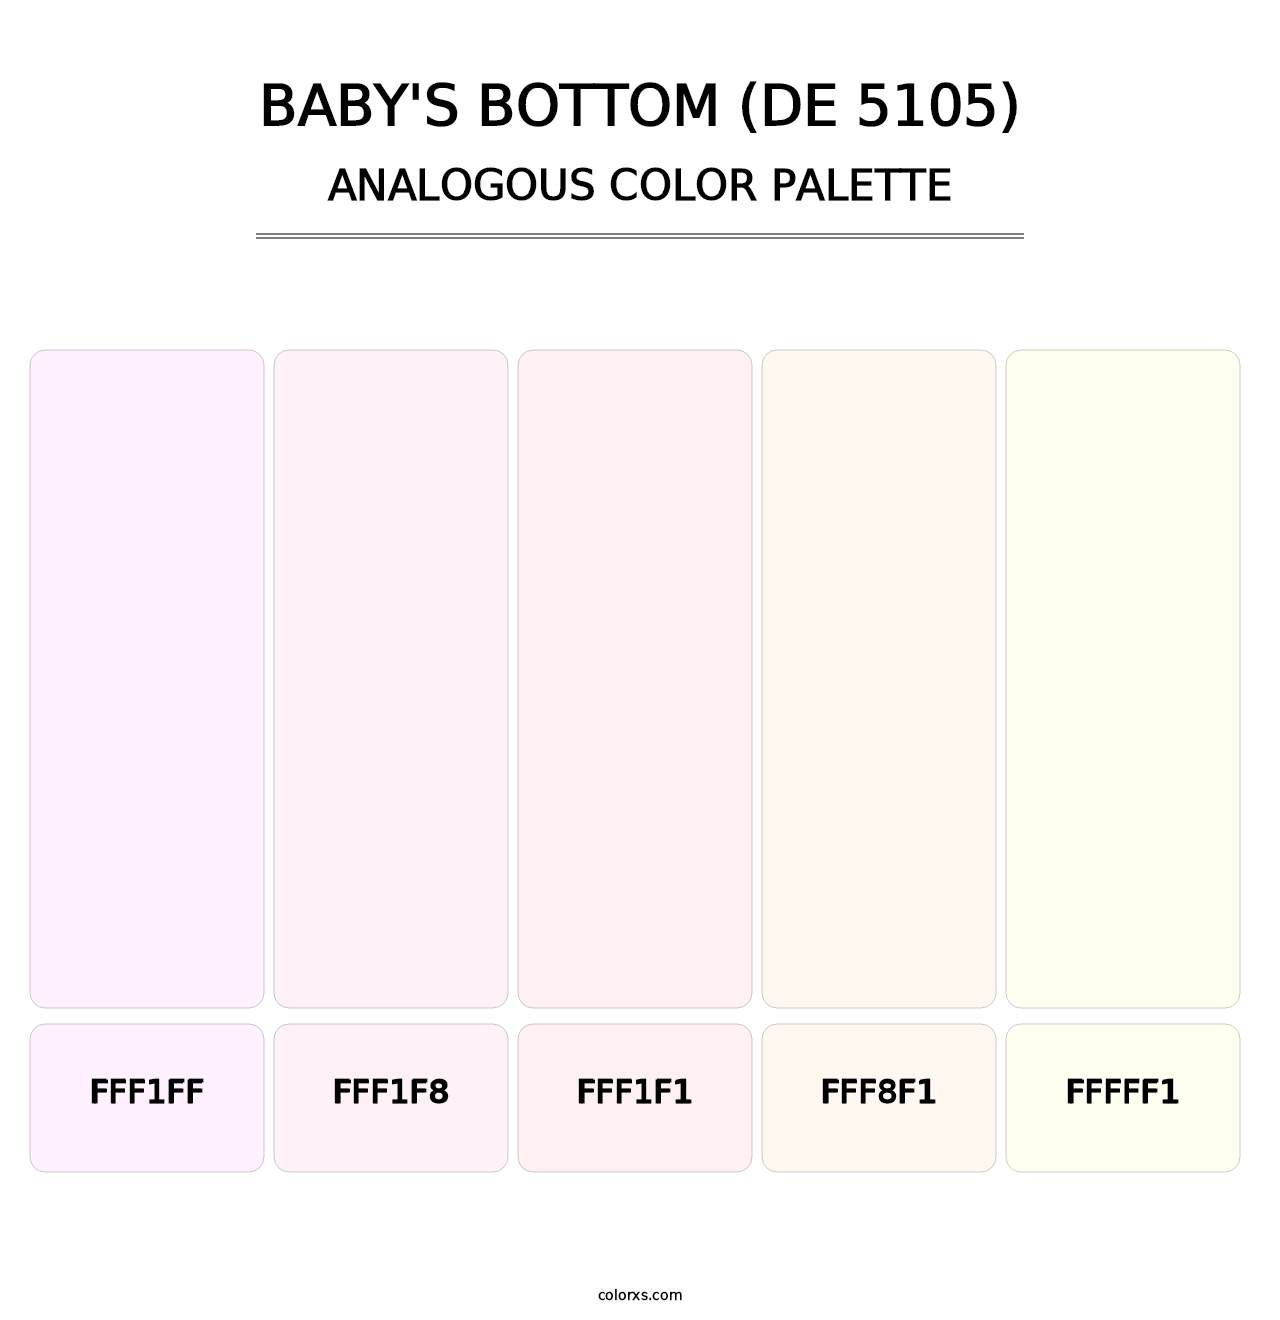 Baby's Bottom (DE 5105) - Analogous Color Palette